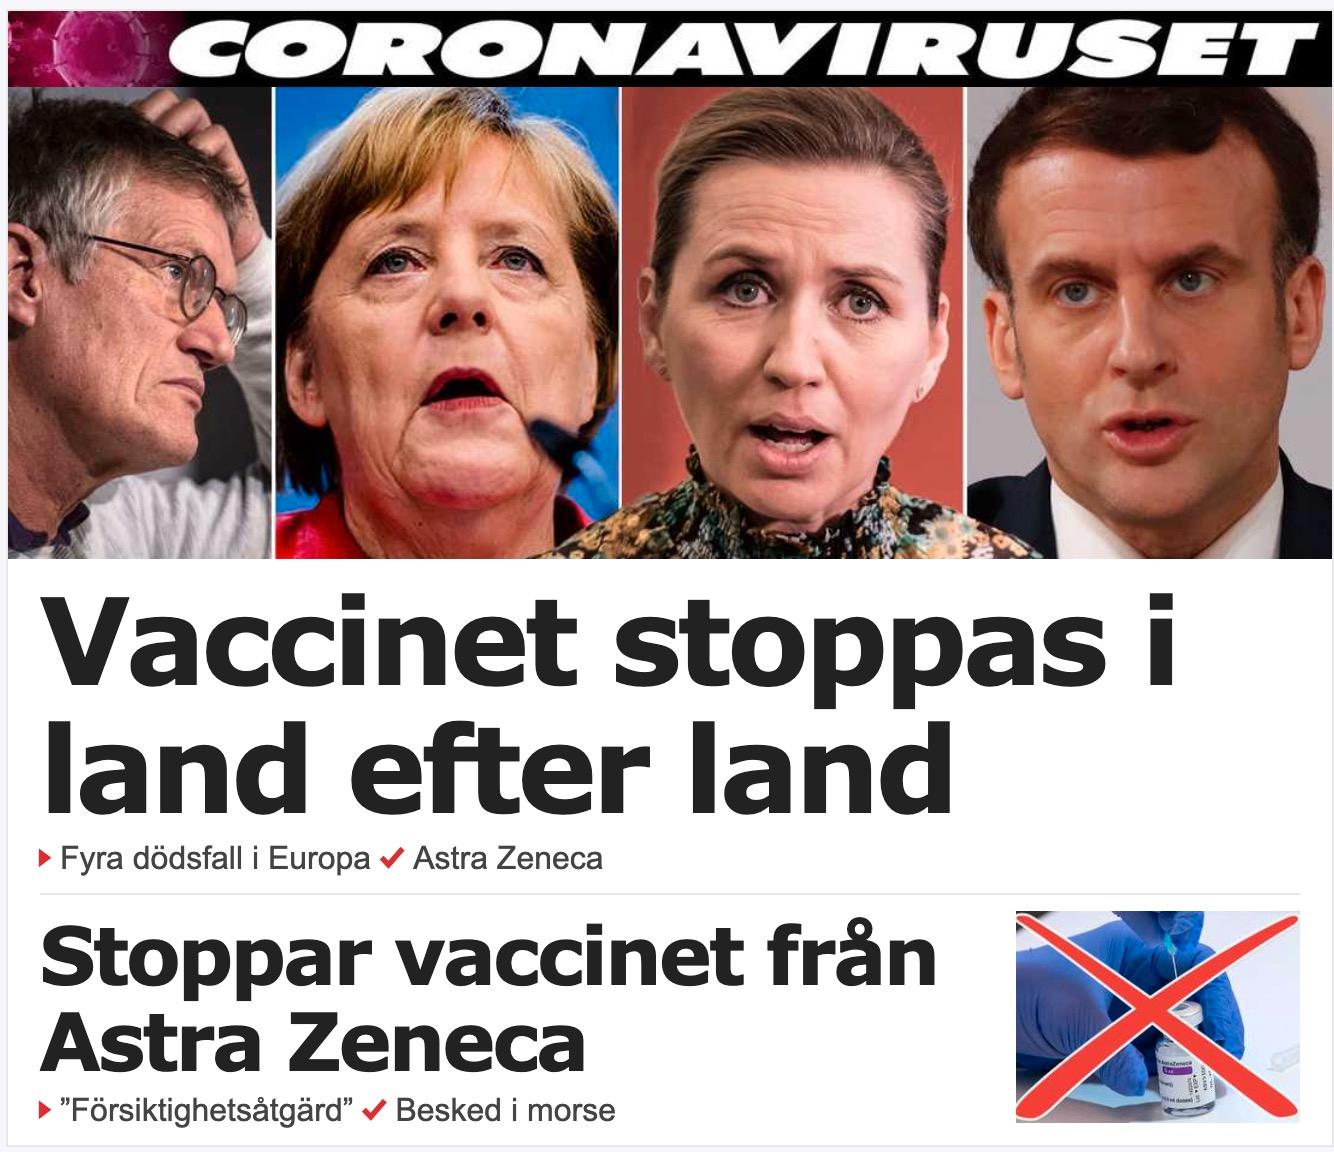 Tisdagen, 16 mars. Vaccinet från Astra Zeneca stoppas i land efter land i Europa.